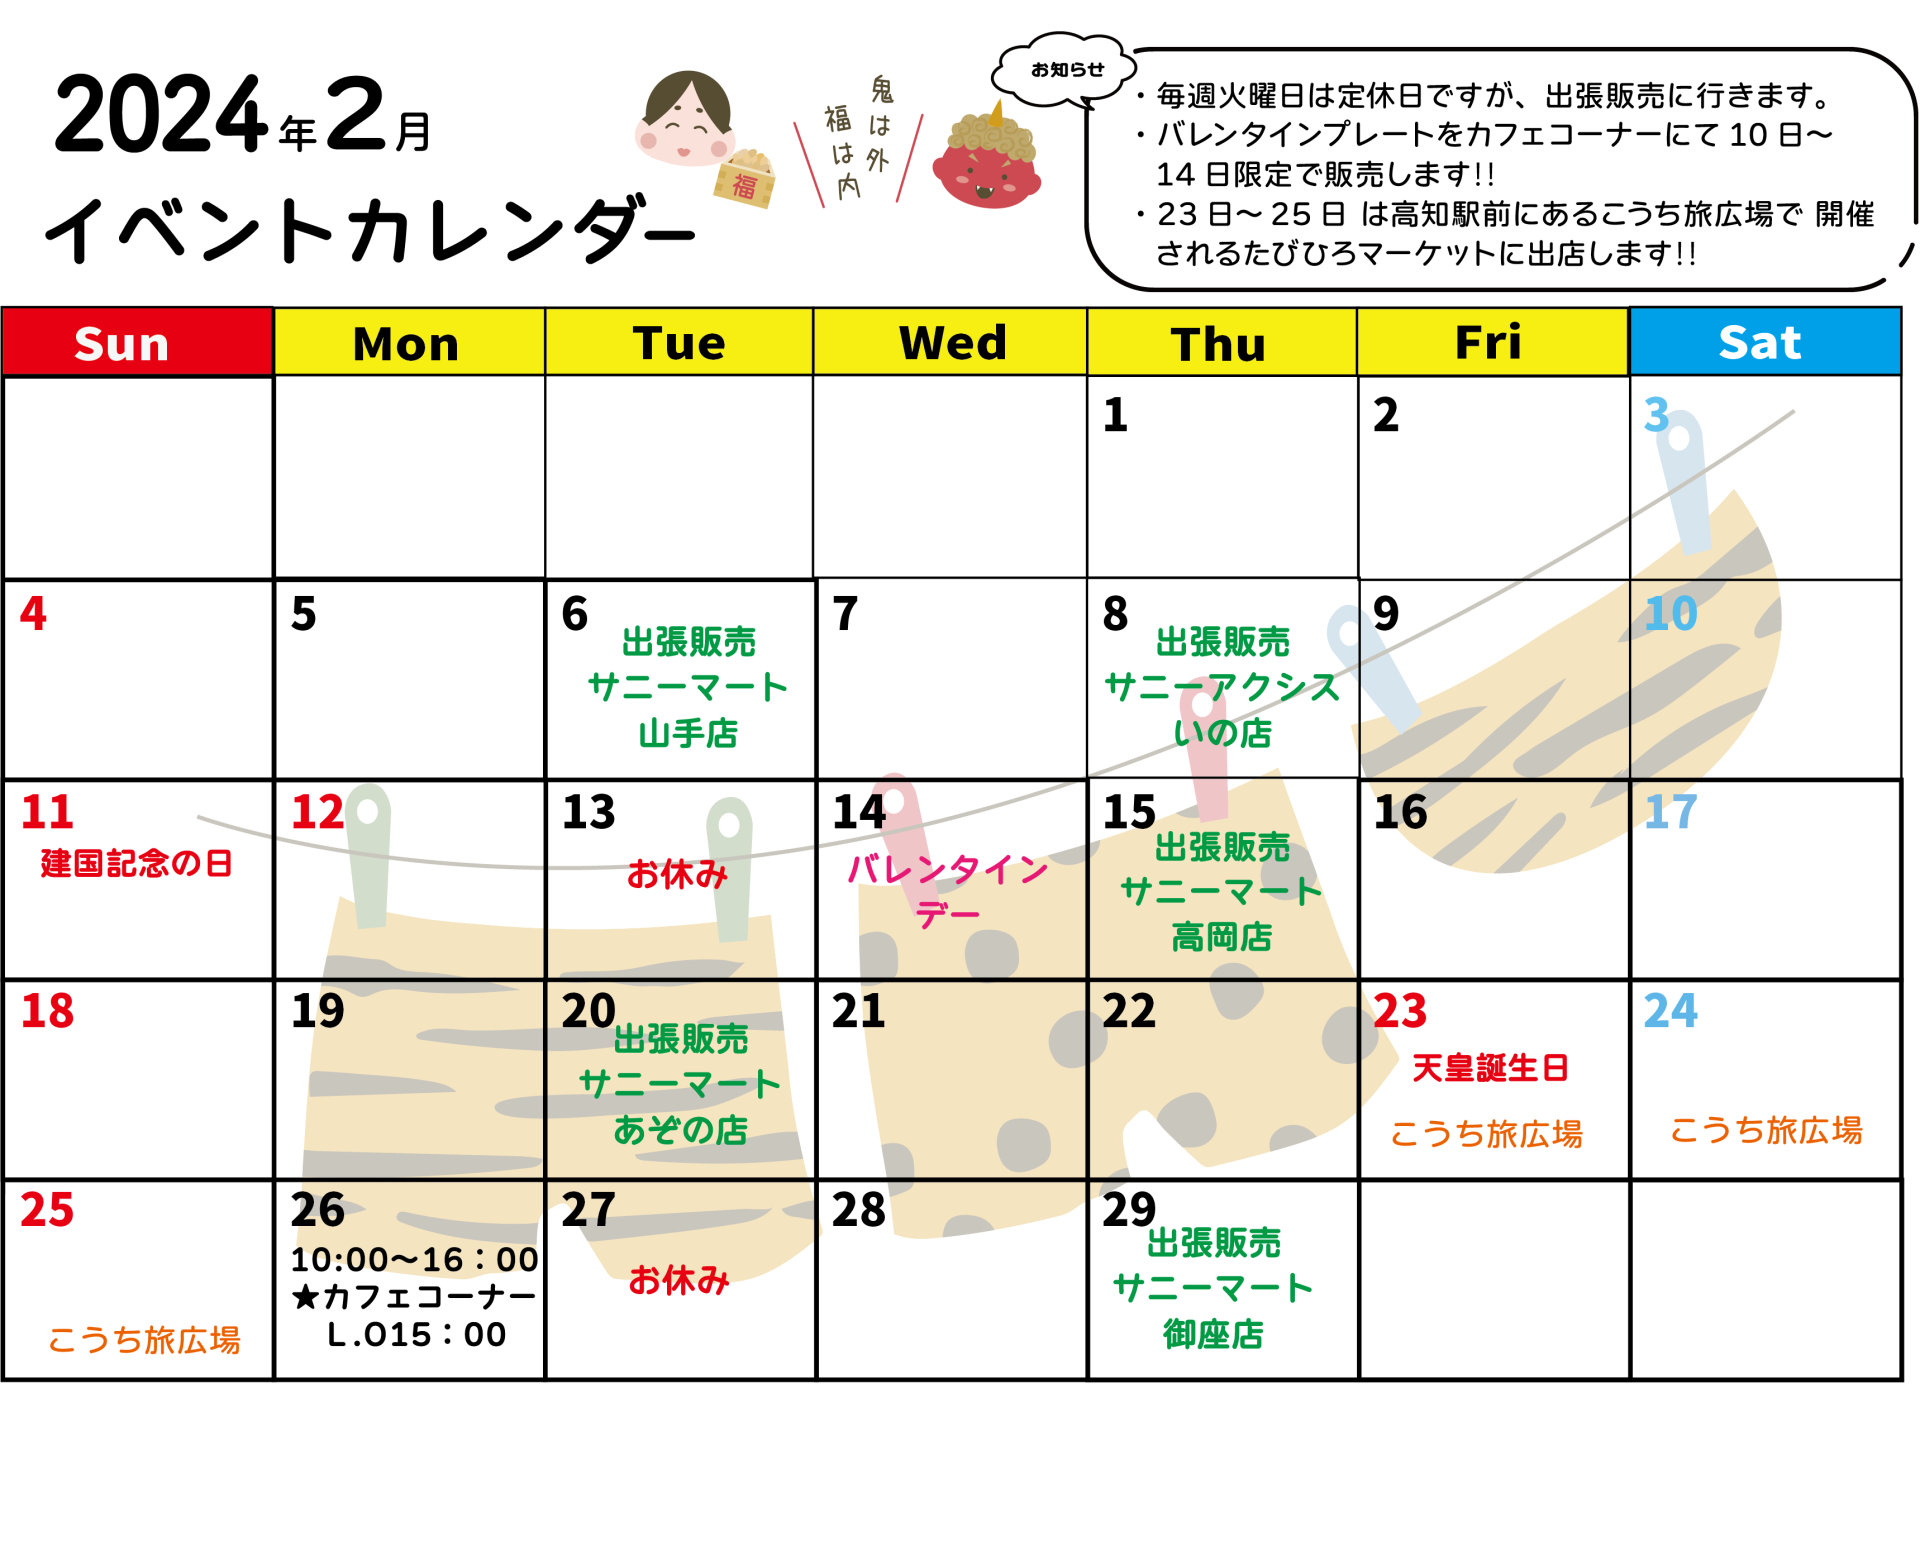 2月イベントカレンダー 